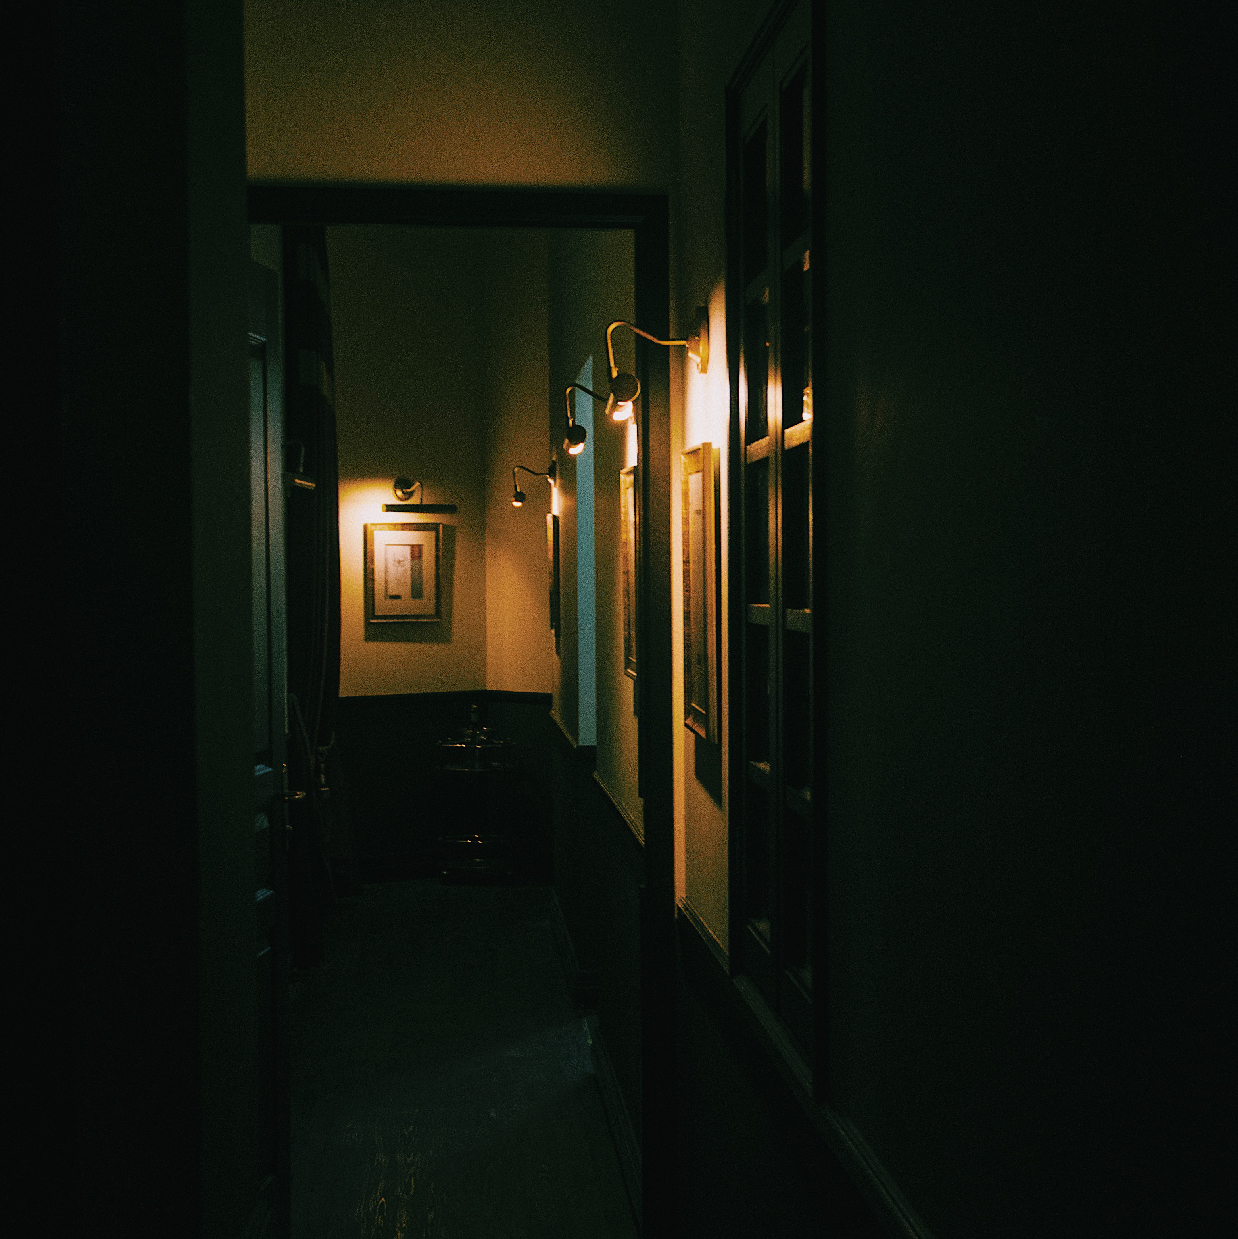 Hauntu | Mystery in a Hotel